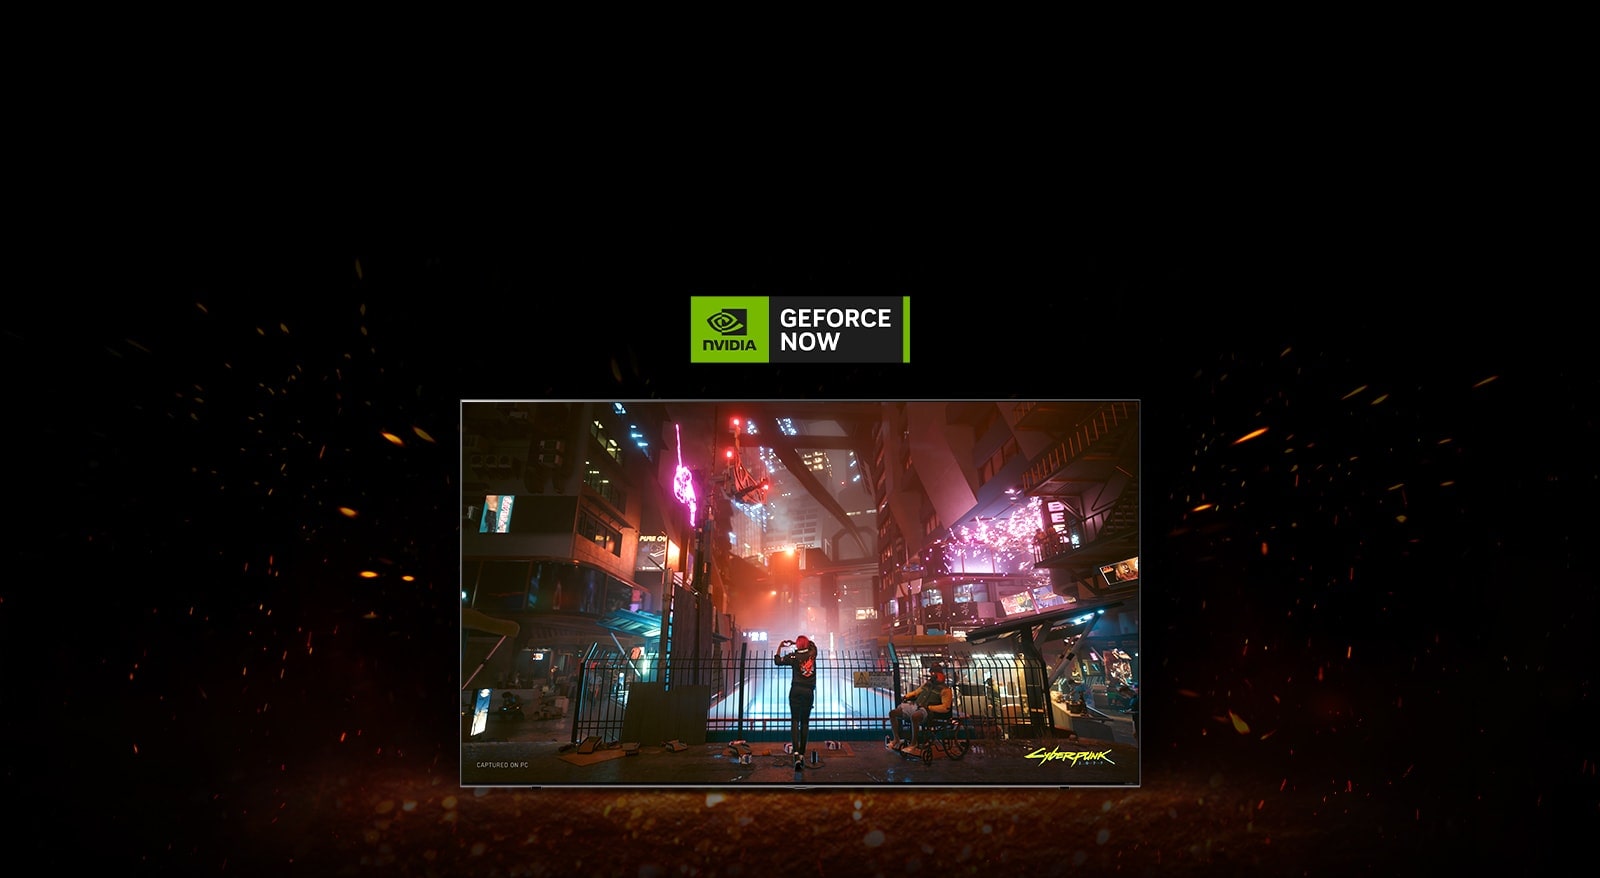 Lángok jelennek meg a TV körül, és a Cyberpunk játék látható a képernyőn. A TV felső részén a GeForce Now logó jelenik meg.